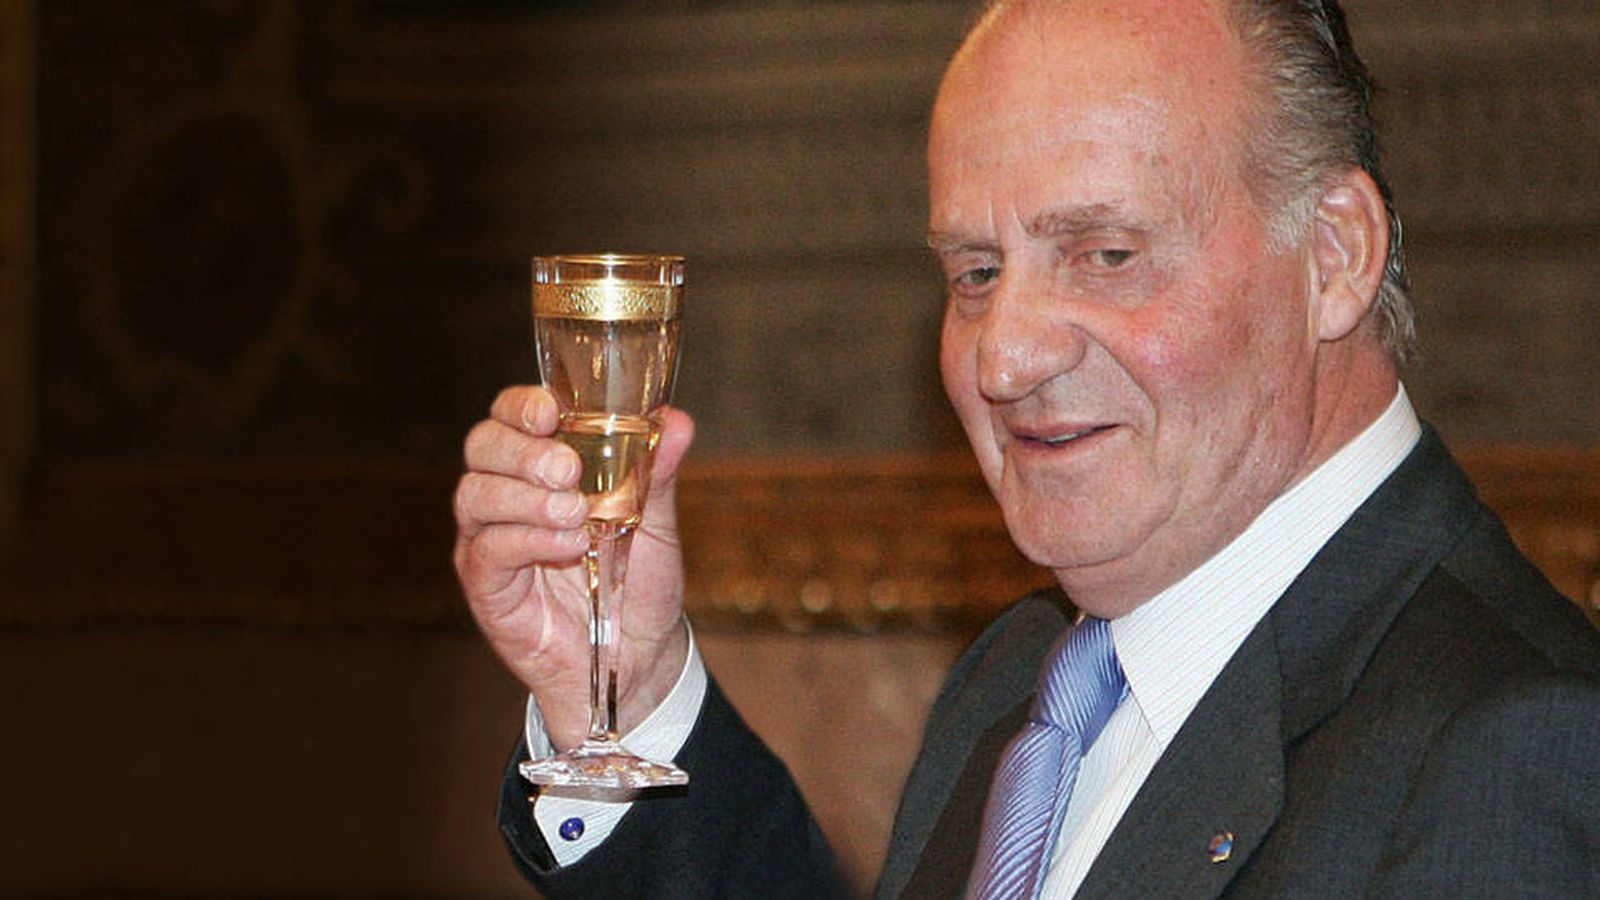 Foto: El rey Juan Carlos brindando en una imagen de archivo. (Gtres)